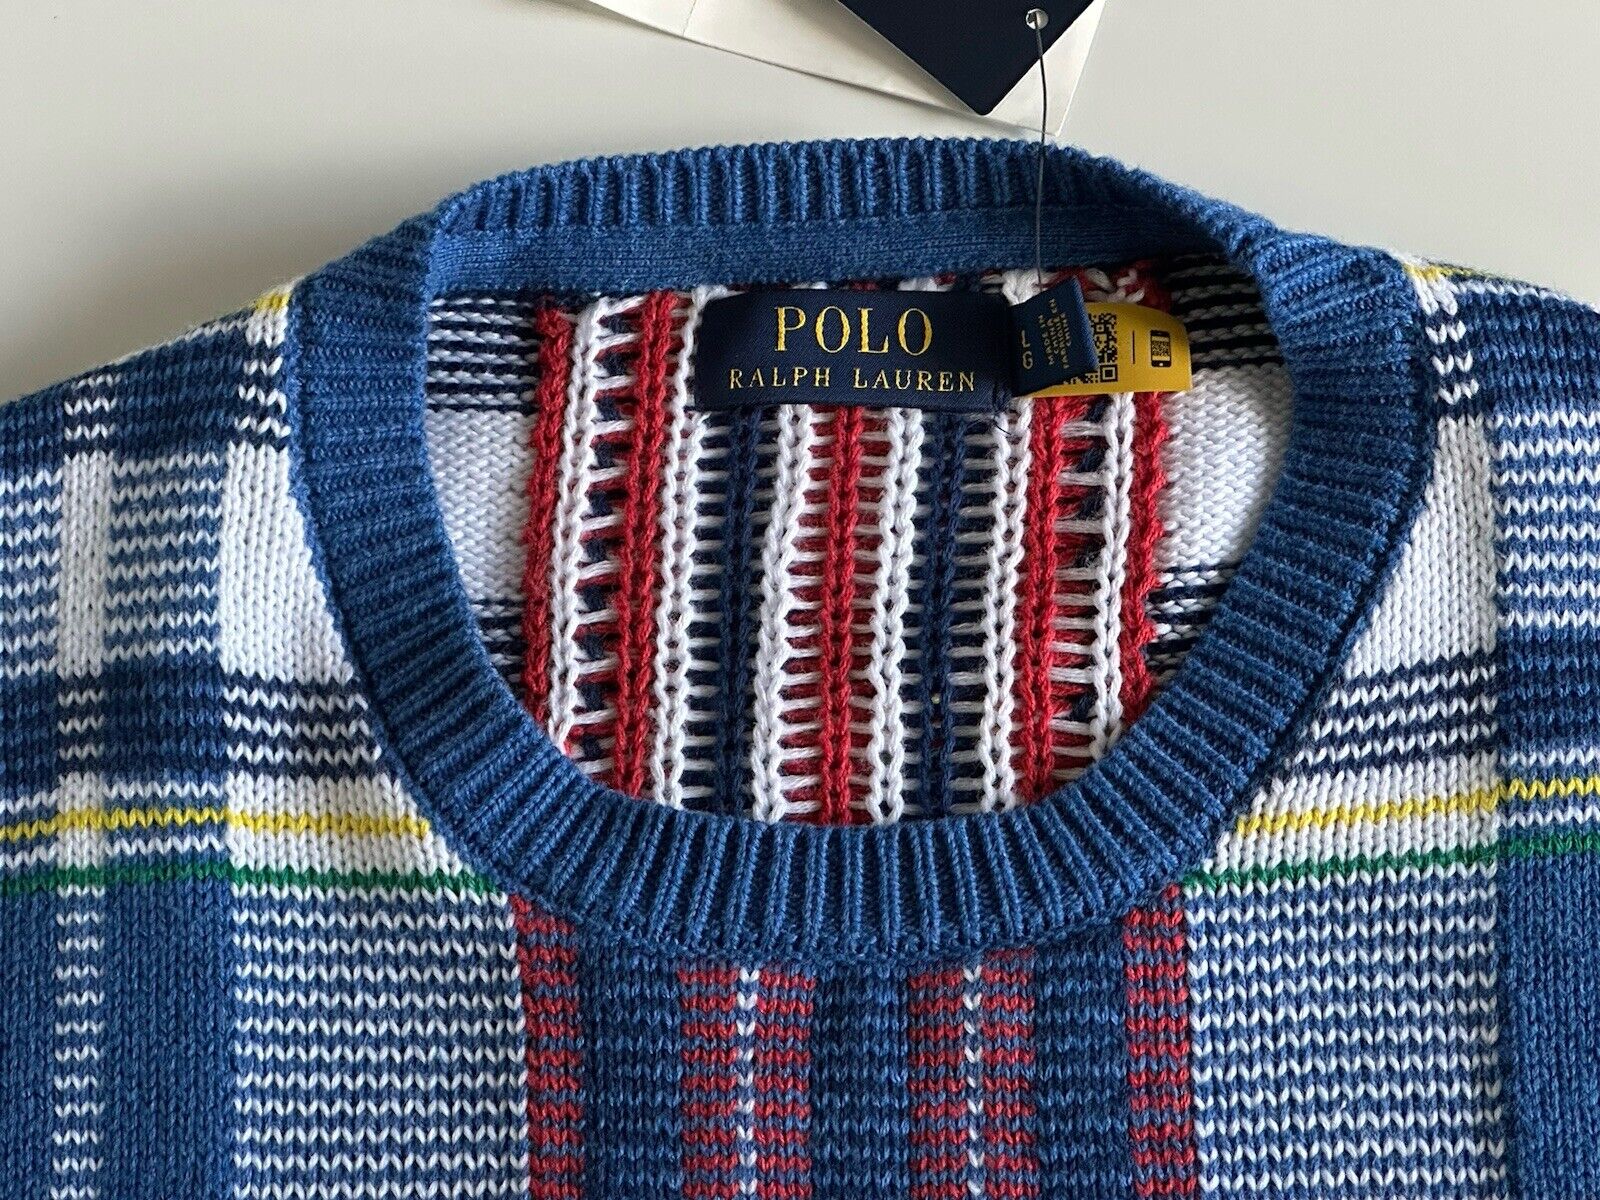 Neu mit Etikett: 398 US-Dollar Polo Ralph Lauren Strick-Baumwollpullover für Herren, mehrfarbig, Größe L 